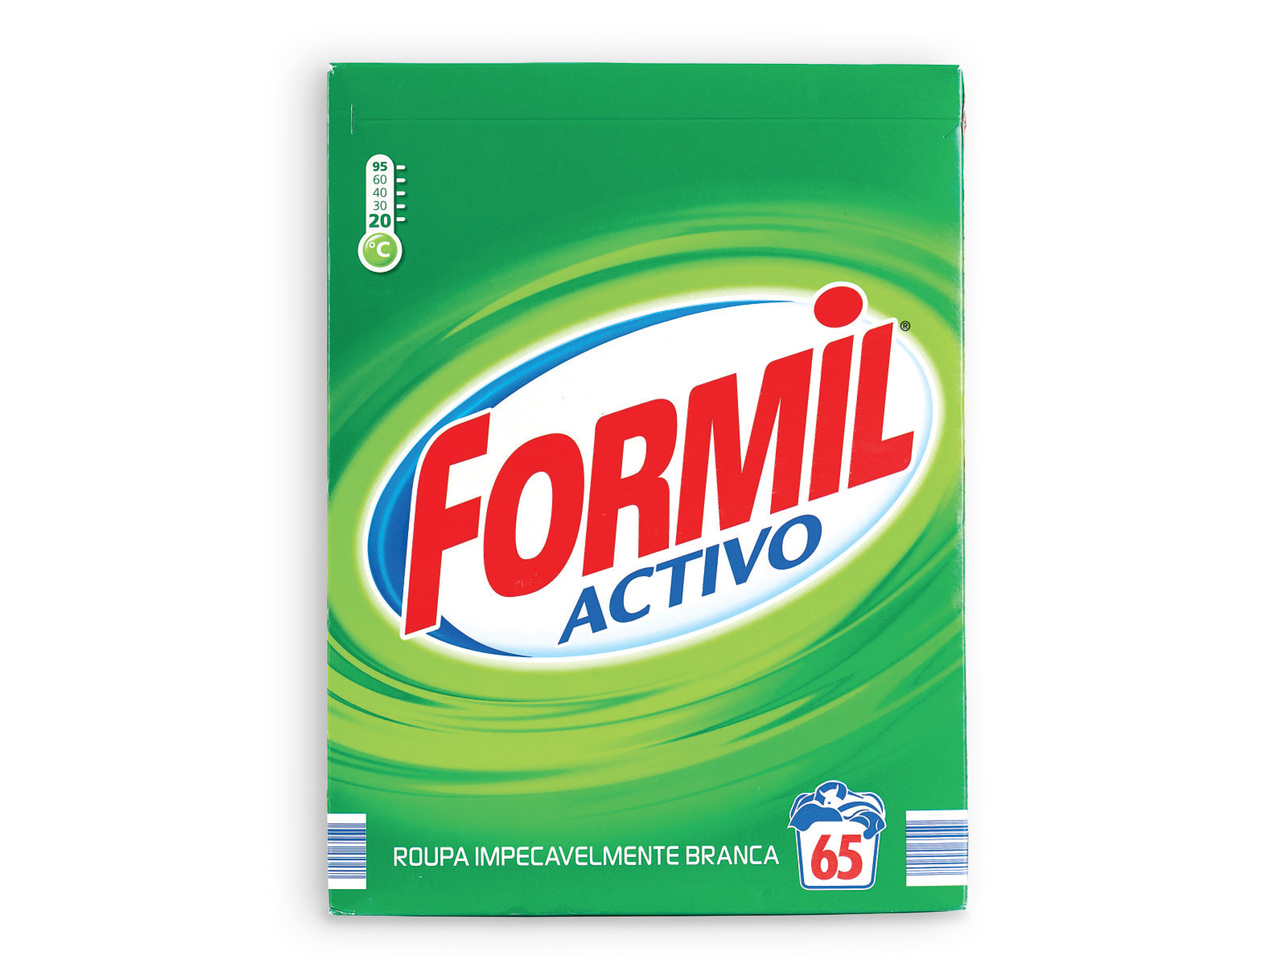 FORMIL(R) Detergente para Roupa Activo